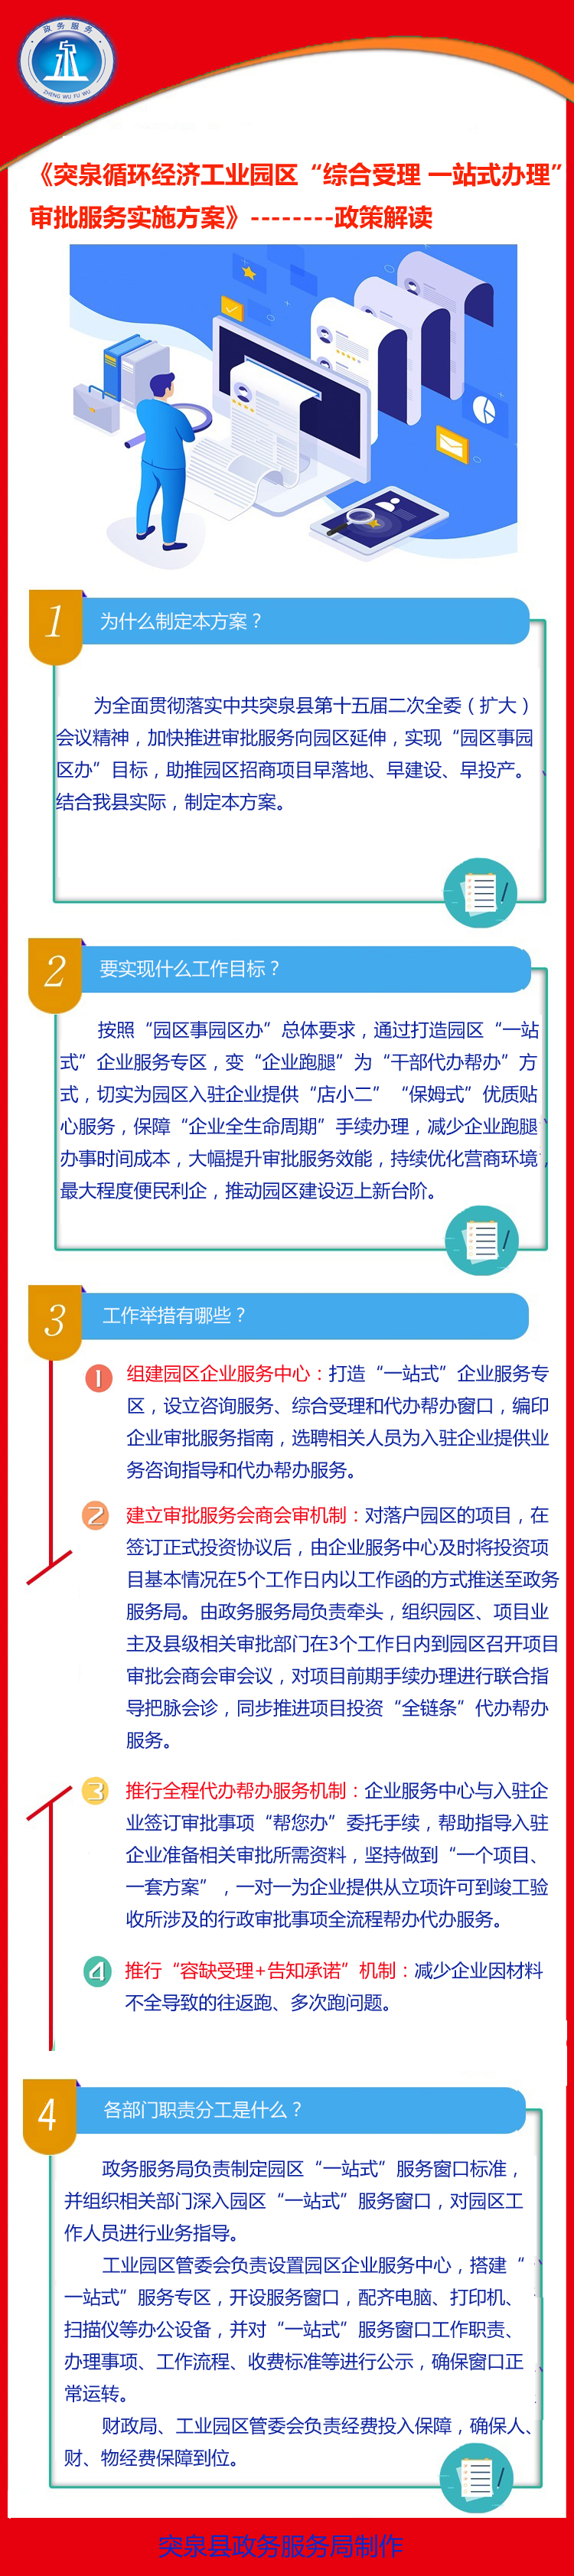 (政策解读)关于印发突泉县循环工业园区“综合受理 一站式办理”审批服务实施方案